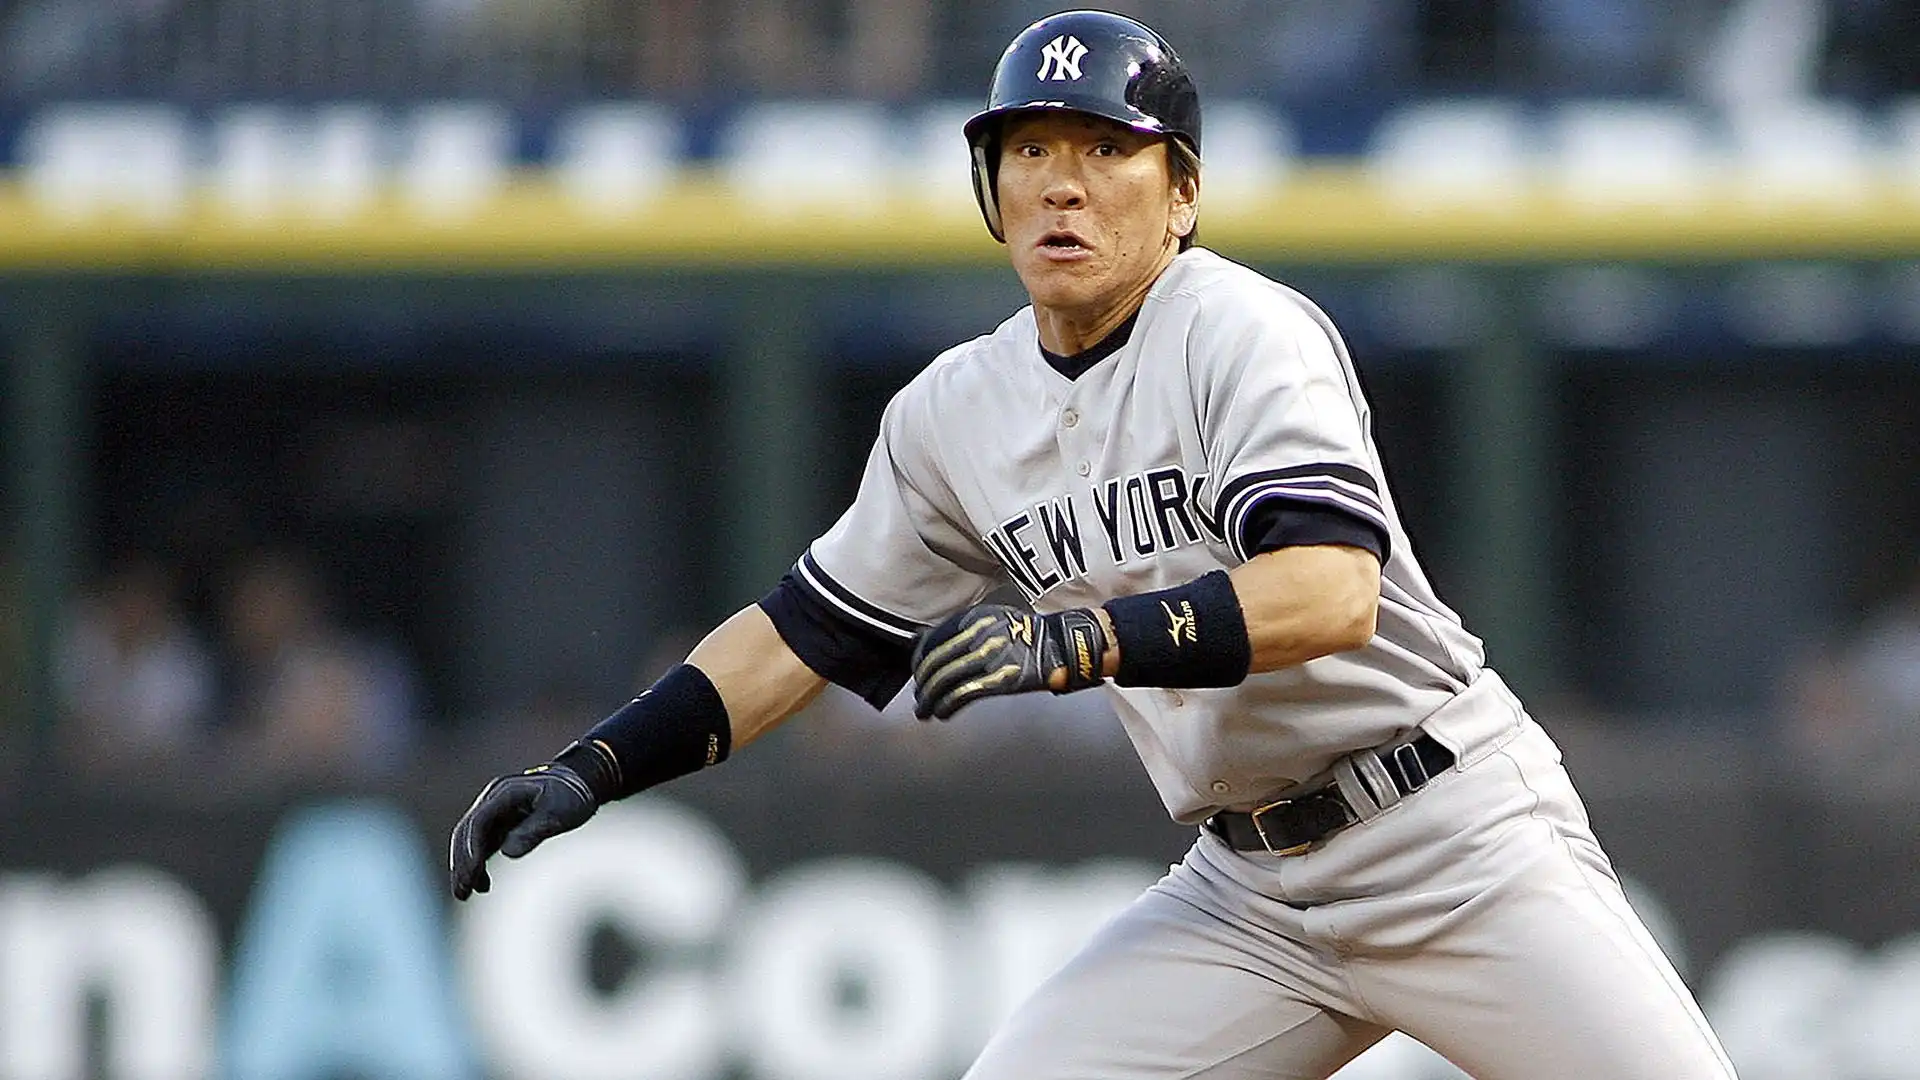 Hideki Matsui (2003-2009): soprannominato "Godzilla", è stato un nove volte All-Star. 507 home runs in carriera, con gli Yankees fu MVP delle World Series 2009